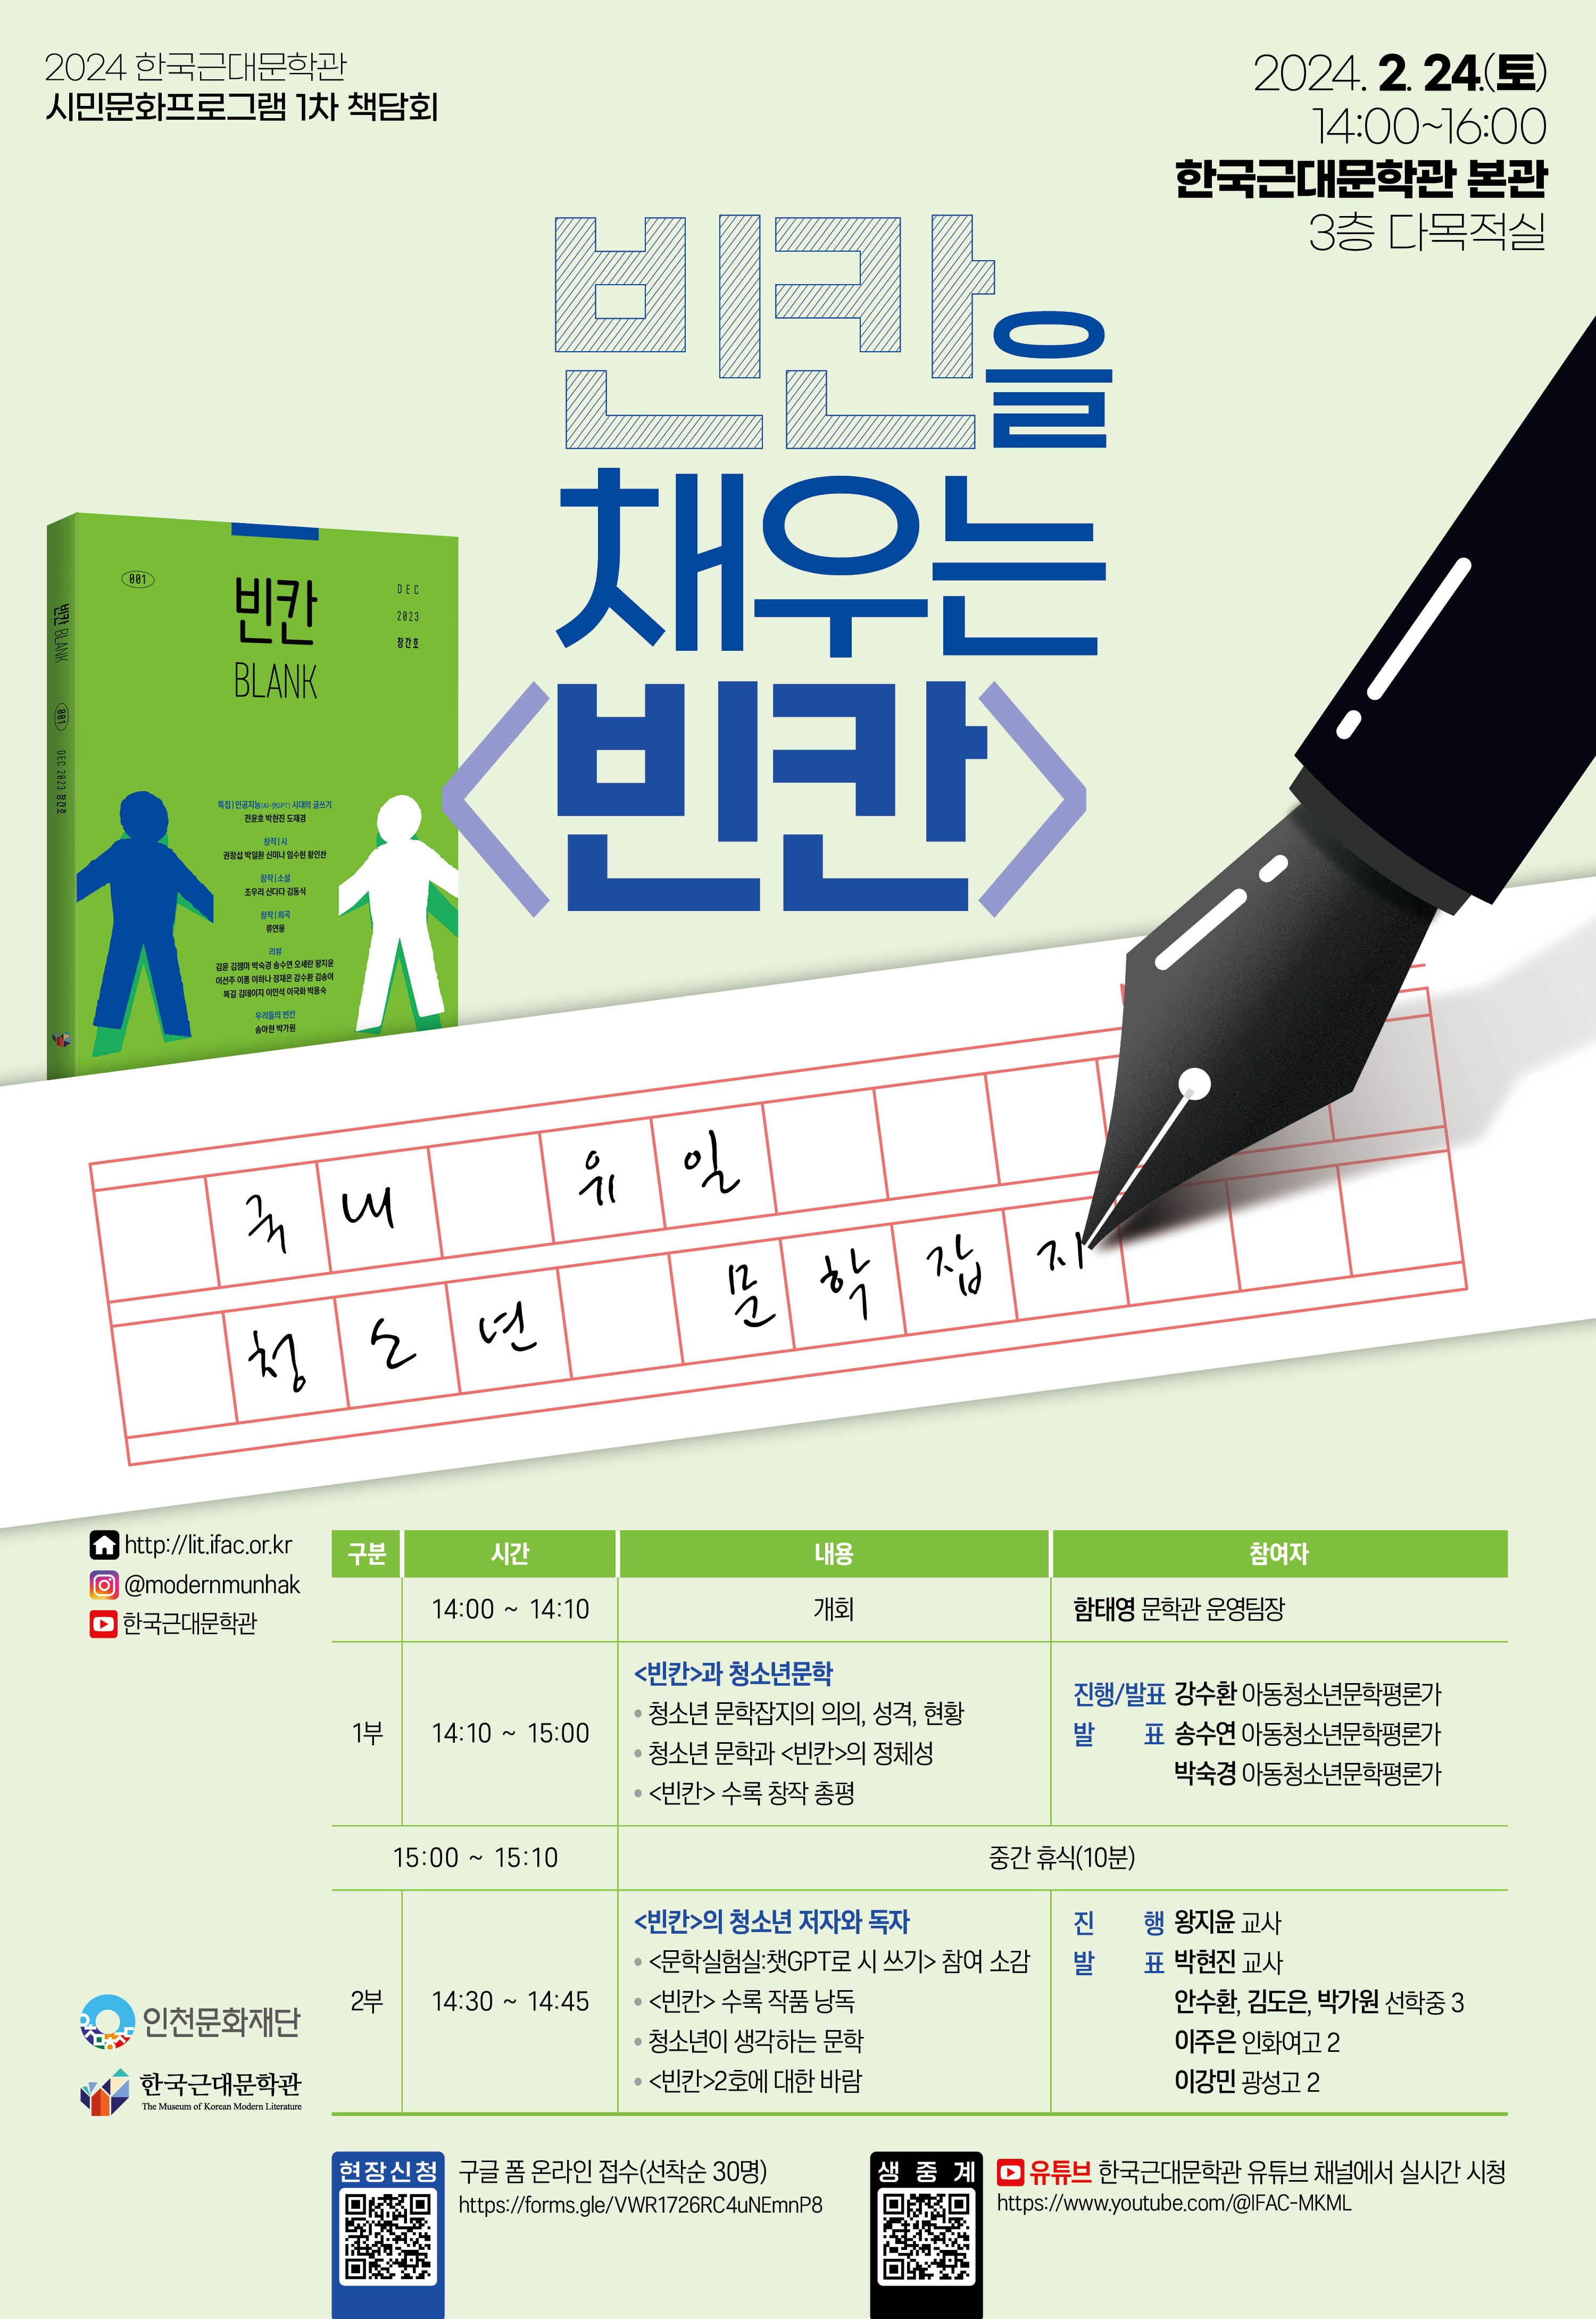 한국근대문학관 2024년 1차 책담회, "빈칸을 채우는 <빈칸>"